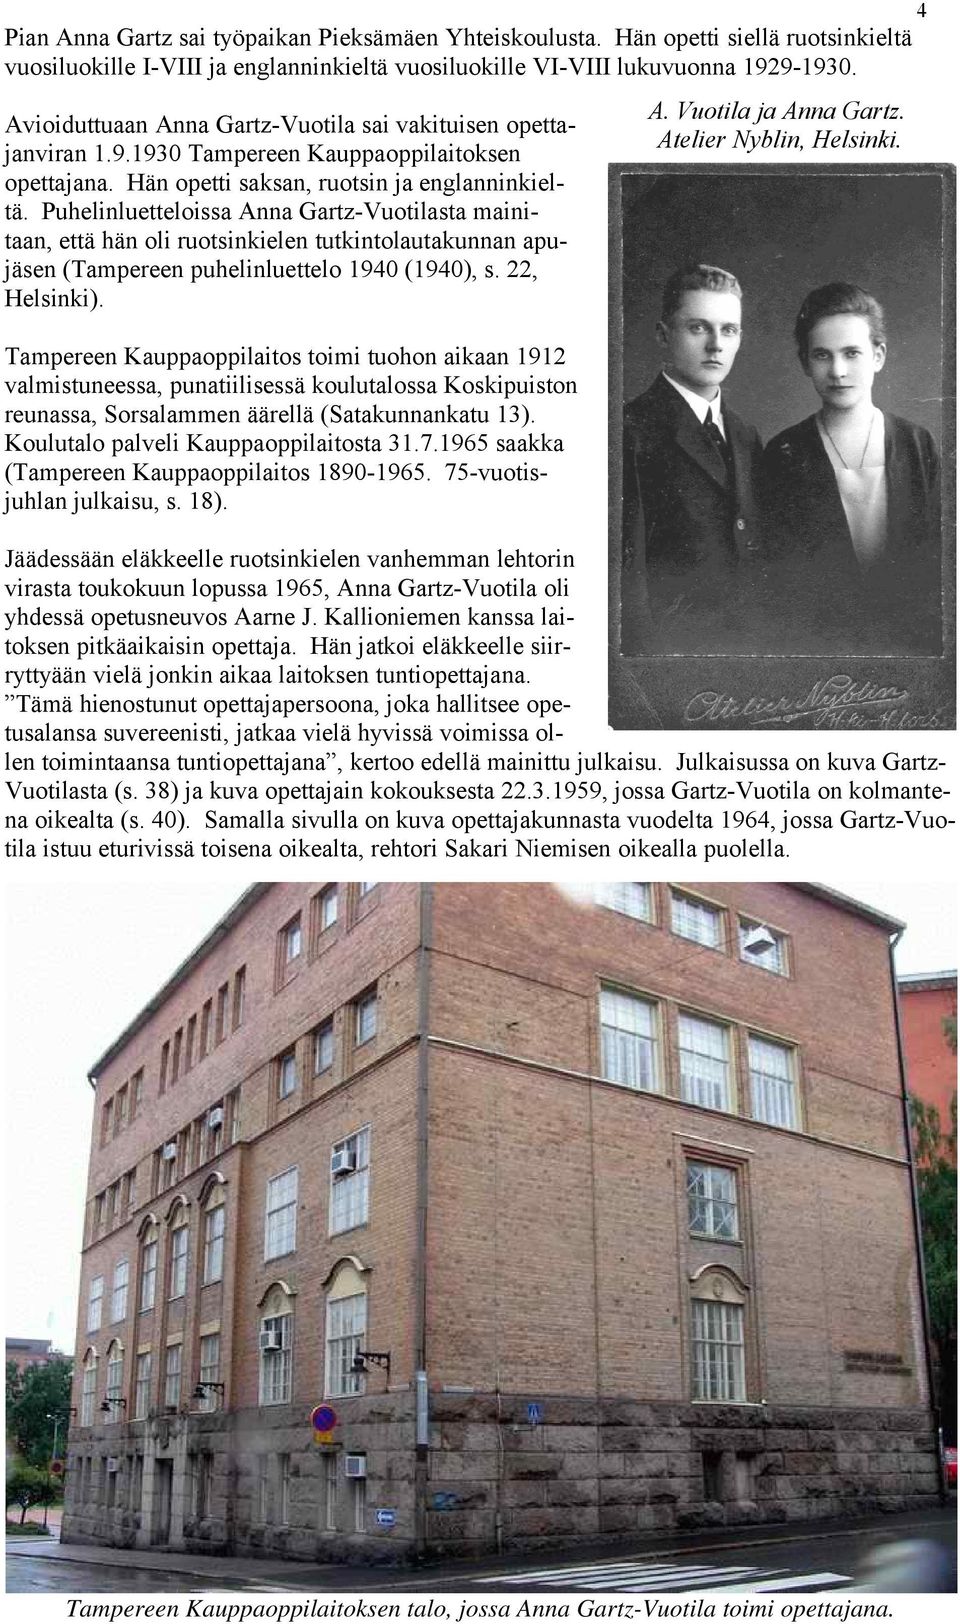 Puhelinluetteloissa Anna Gartz-Vuotilasta mainitaan, että hän oli ruotsinkielen tutkintolautakunnan apujäsen (Tampereen puhelinluettelo 1940 (1940), s. 22, Helsinki). A. Vuotila ja Anna Gartz.